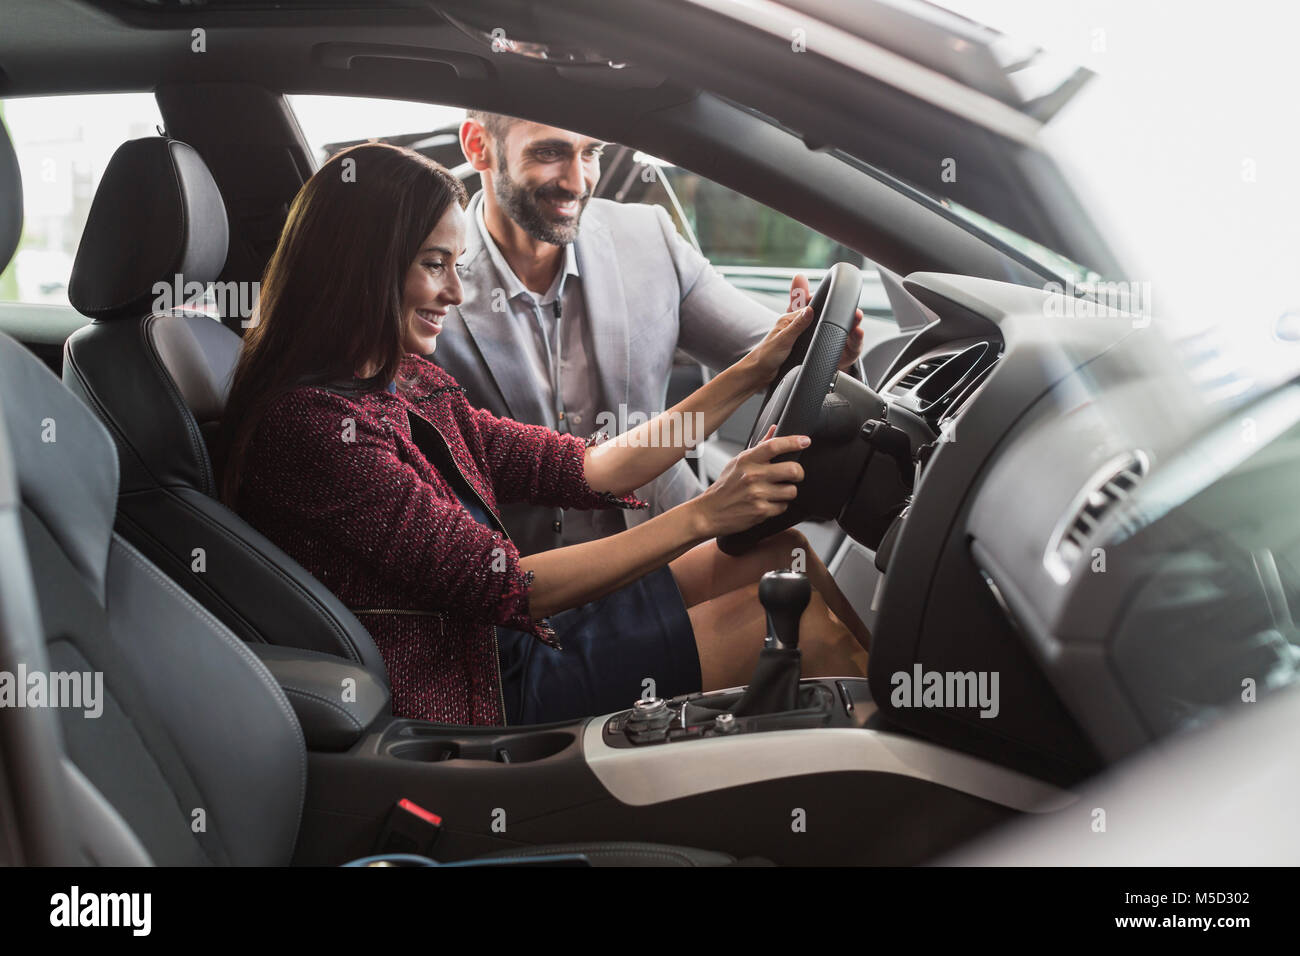 Vendeur de voiture et female customer dans Driver's Seat of new car in car dealership showroom Banque D'Images